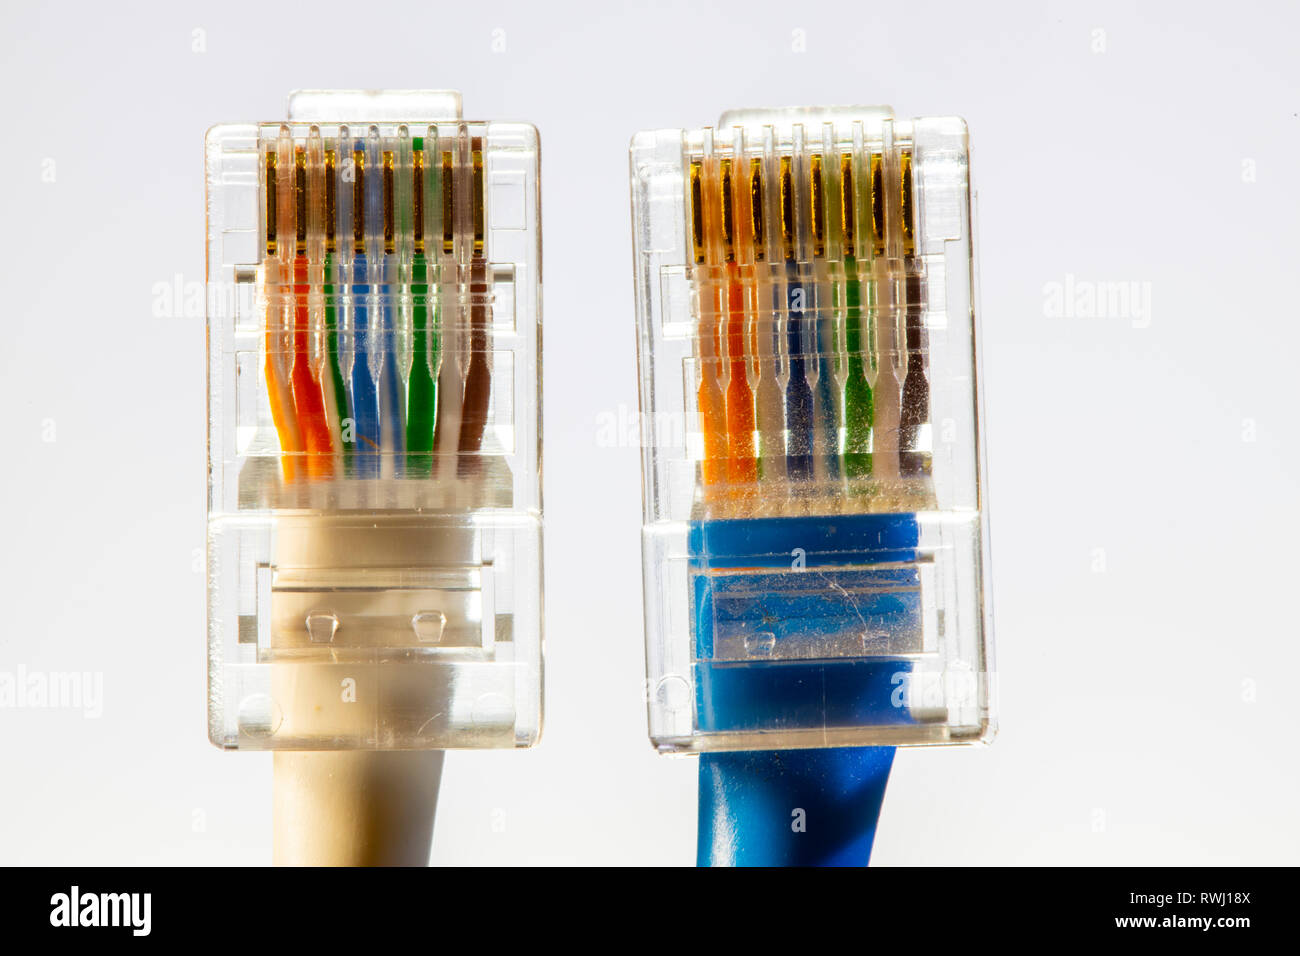 Internetverbindung, RJ45-Stecker, LAN-Kabel, Patchkabel, Ethernet  Stockfotografie - Alamy